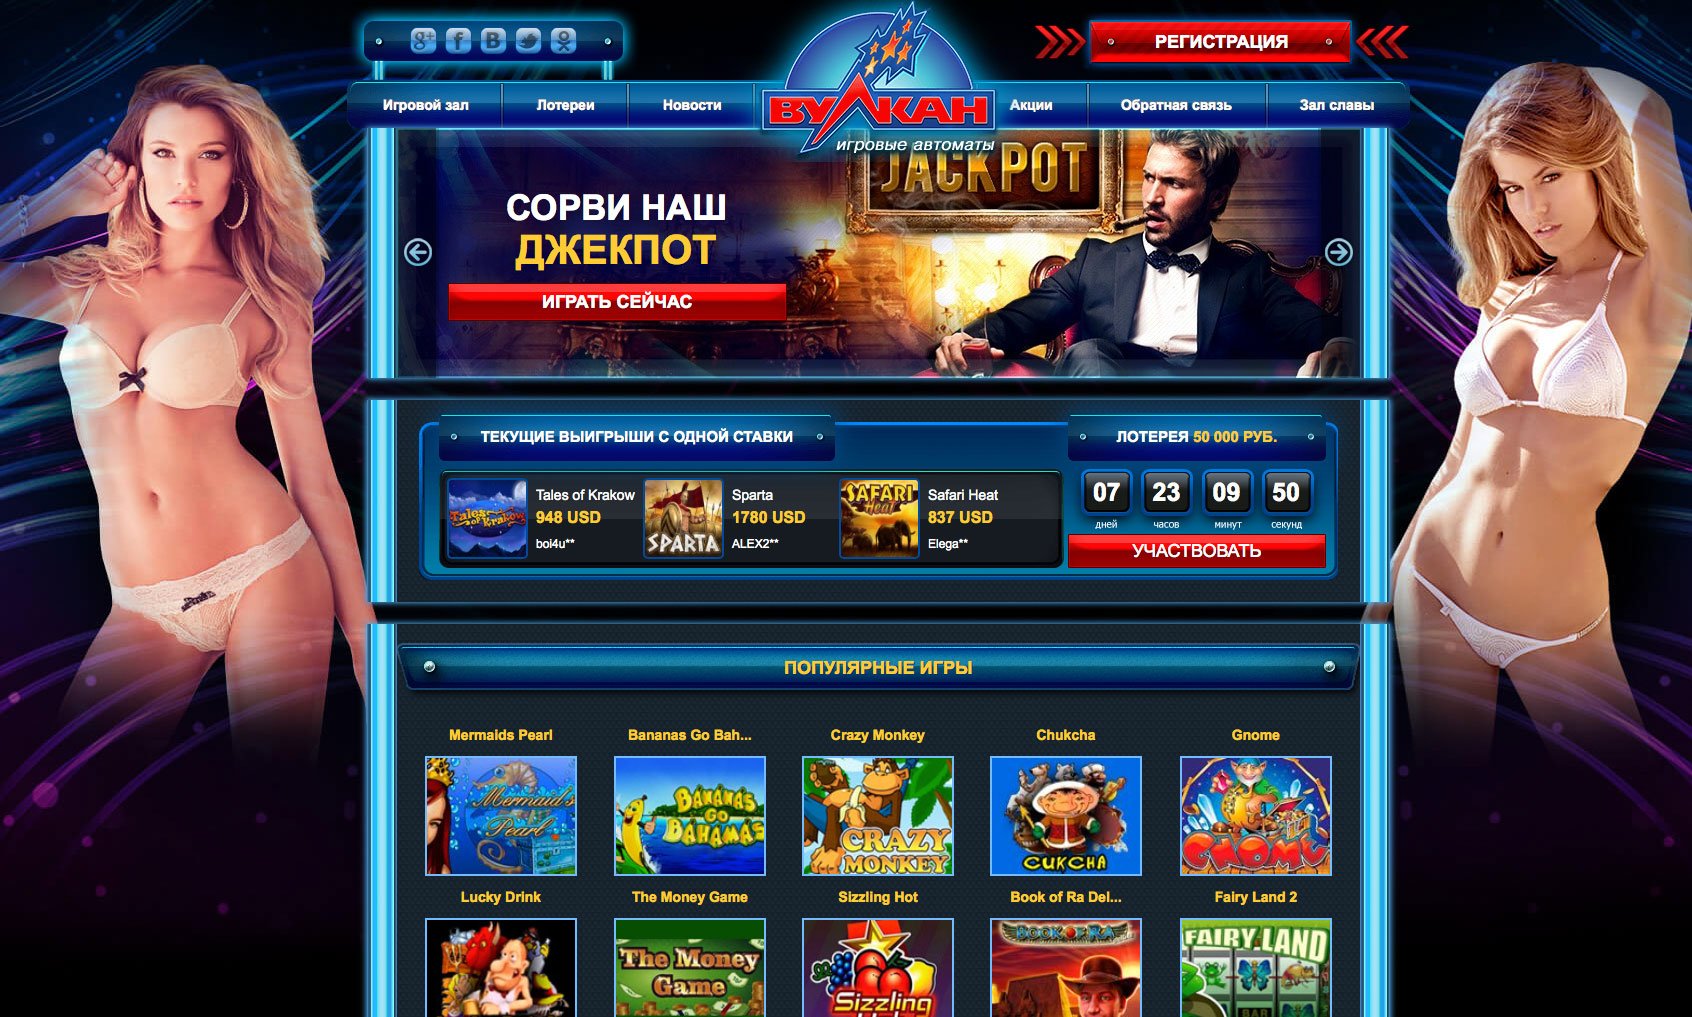 Онлайн Vulkan casino: выбираем лучшие игры сети